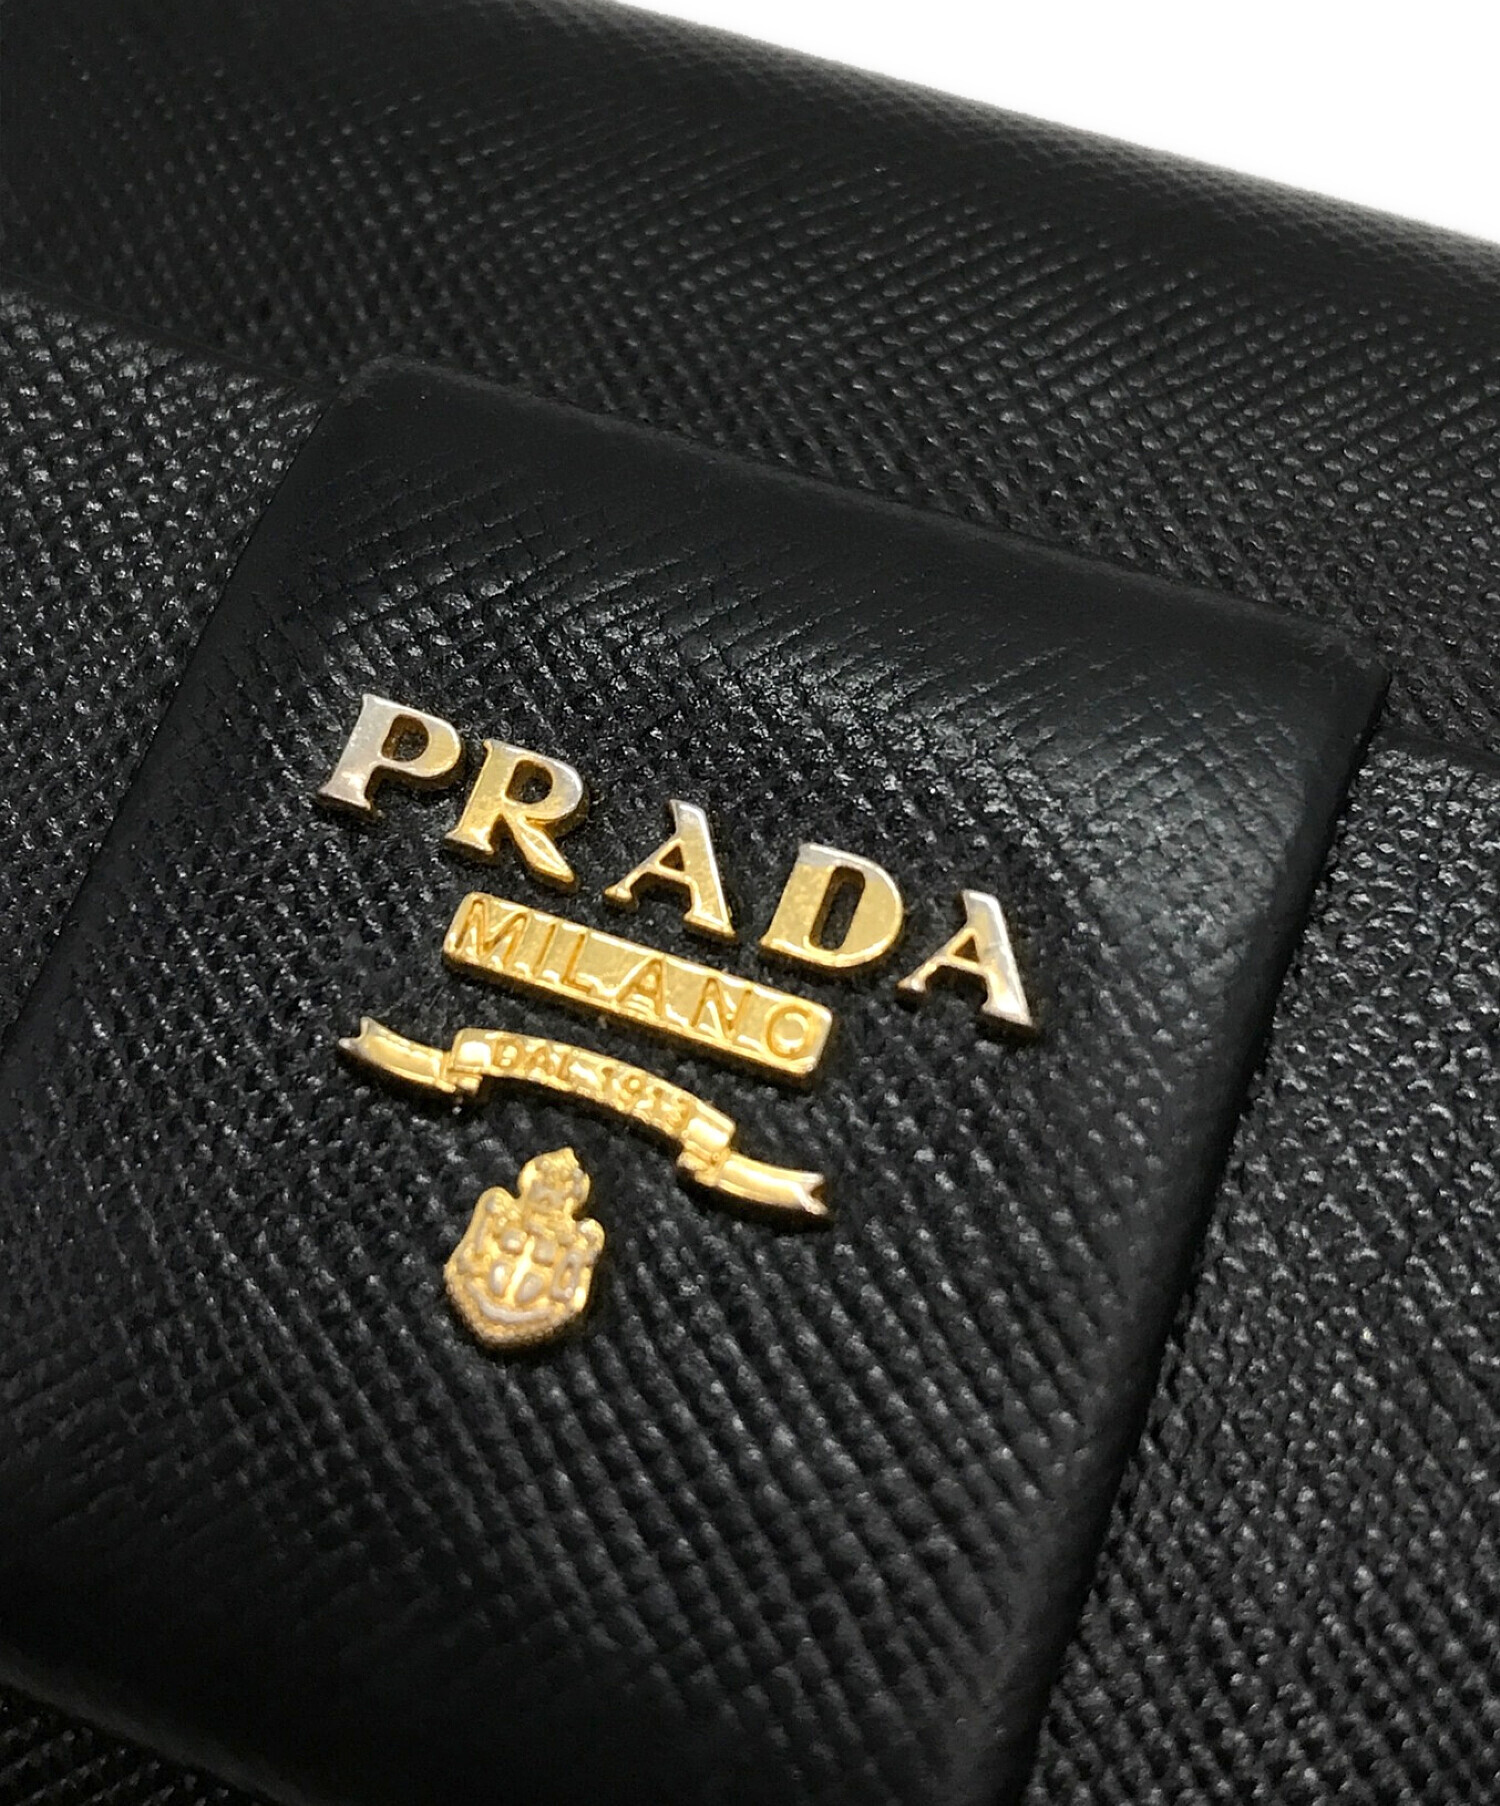 PRADA (プラダ) リボンサフィアーノラウンドジップウォレット ブラック サイズ:下記参照